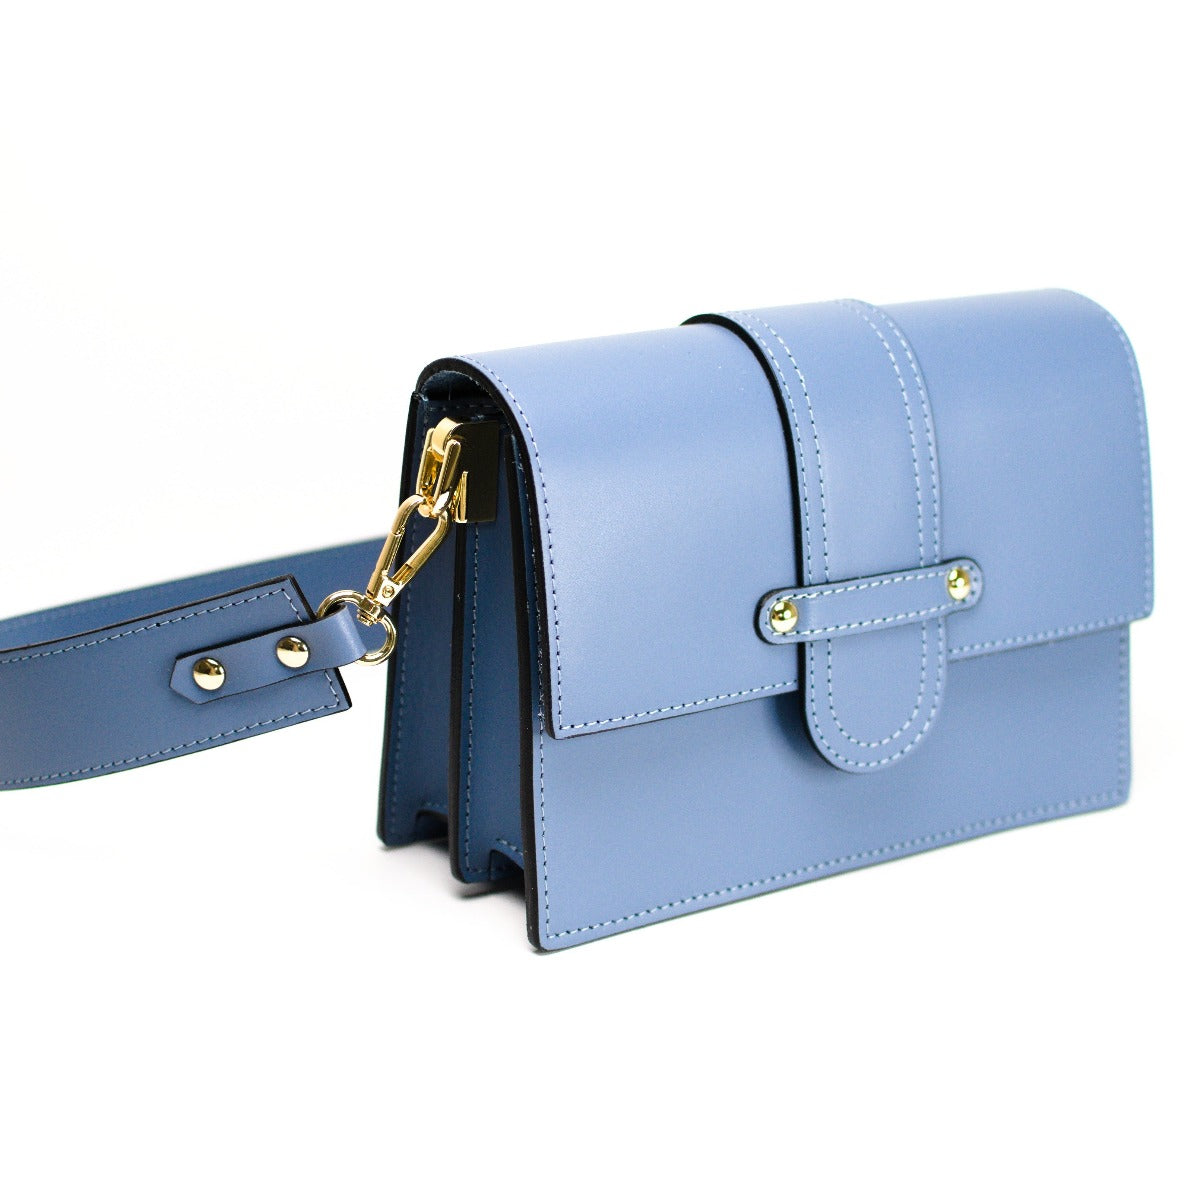 Leather bag with 2 shoulder straps "Atri", Blue